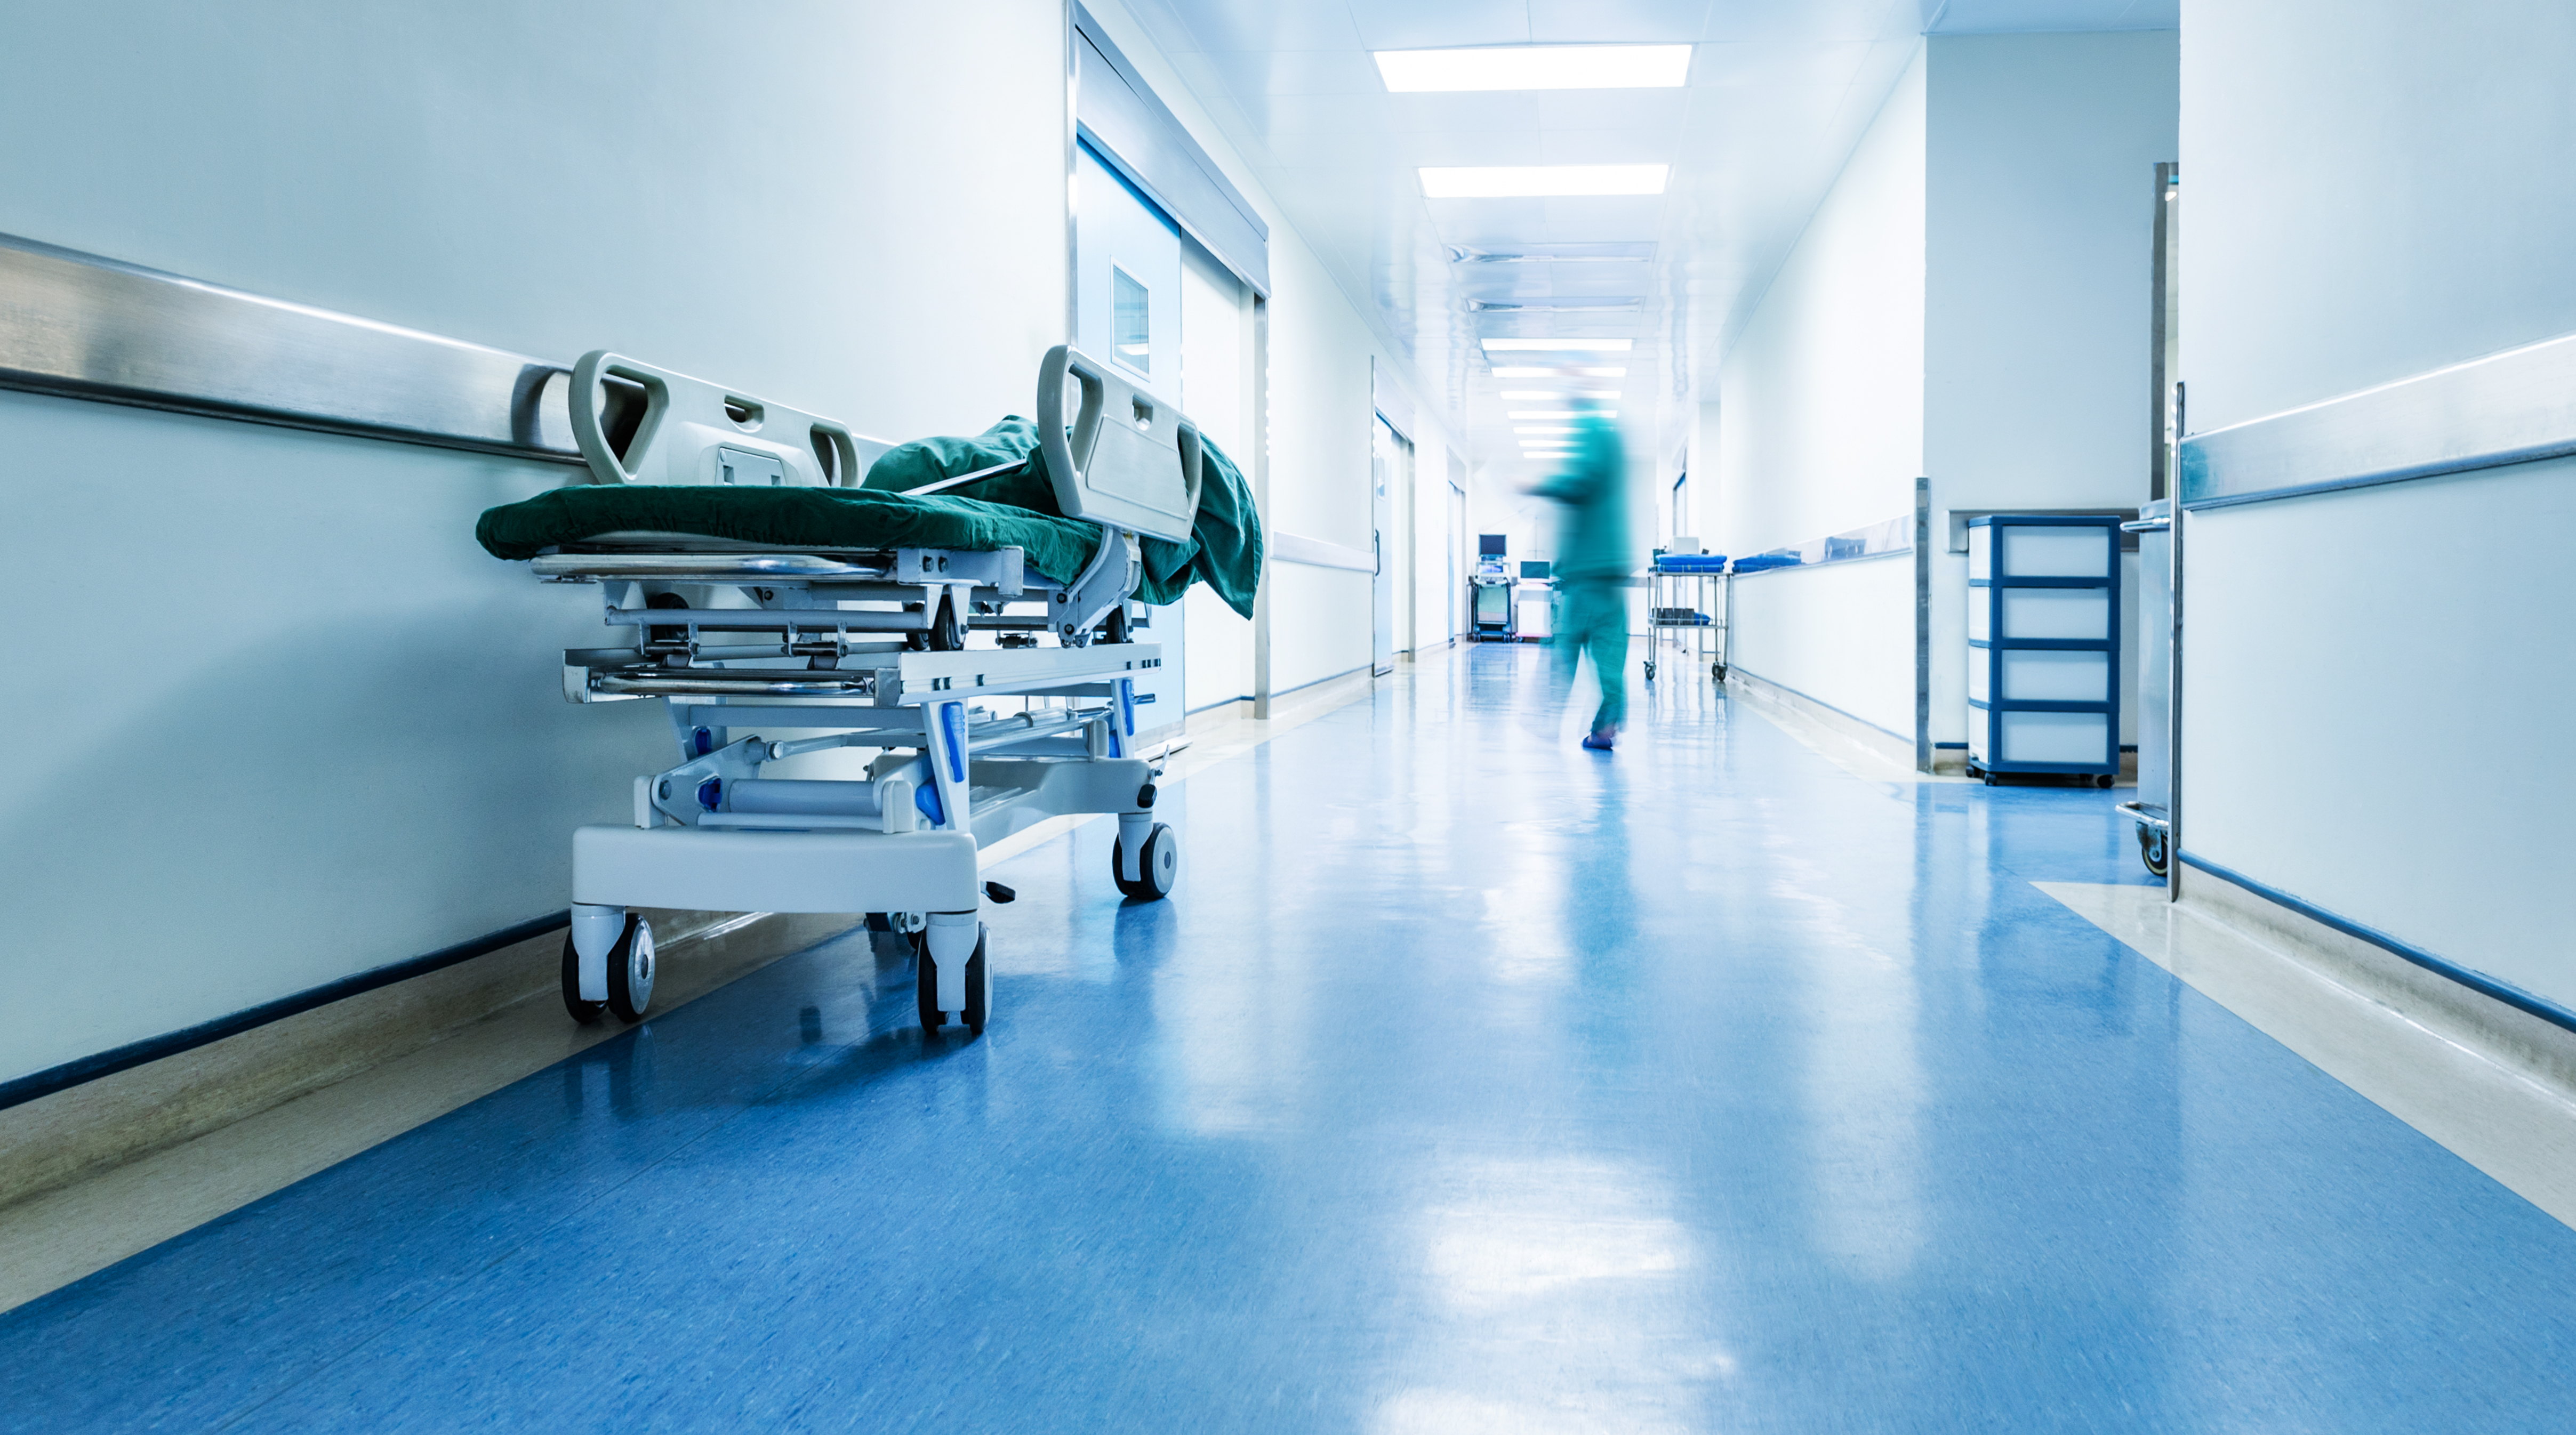 Doctors or nurses walking in hospital | Source: Shutterstock